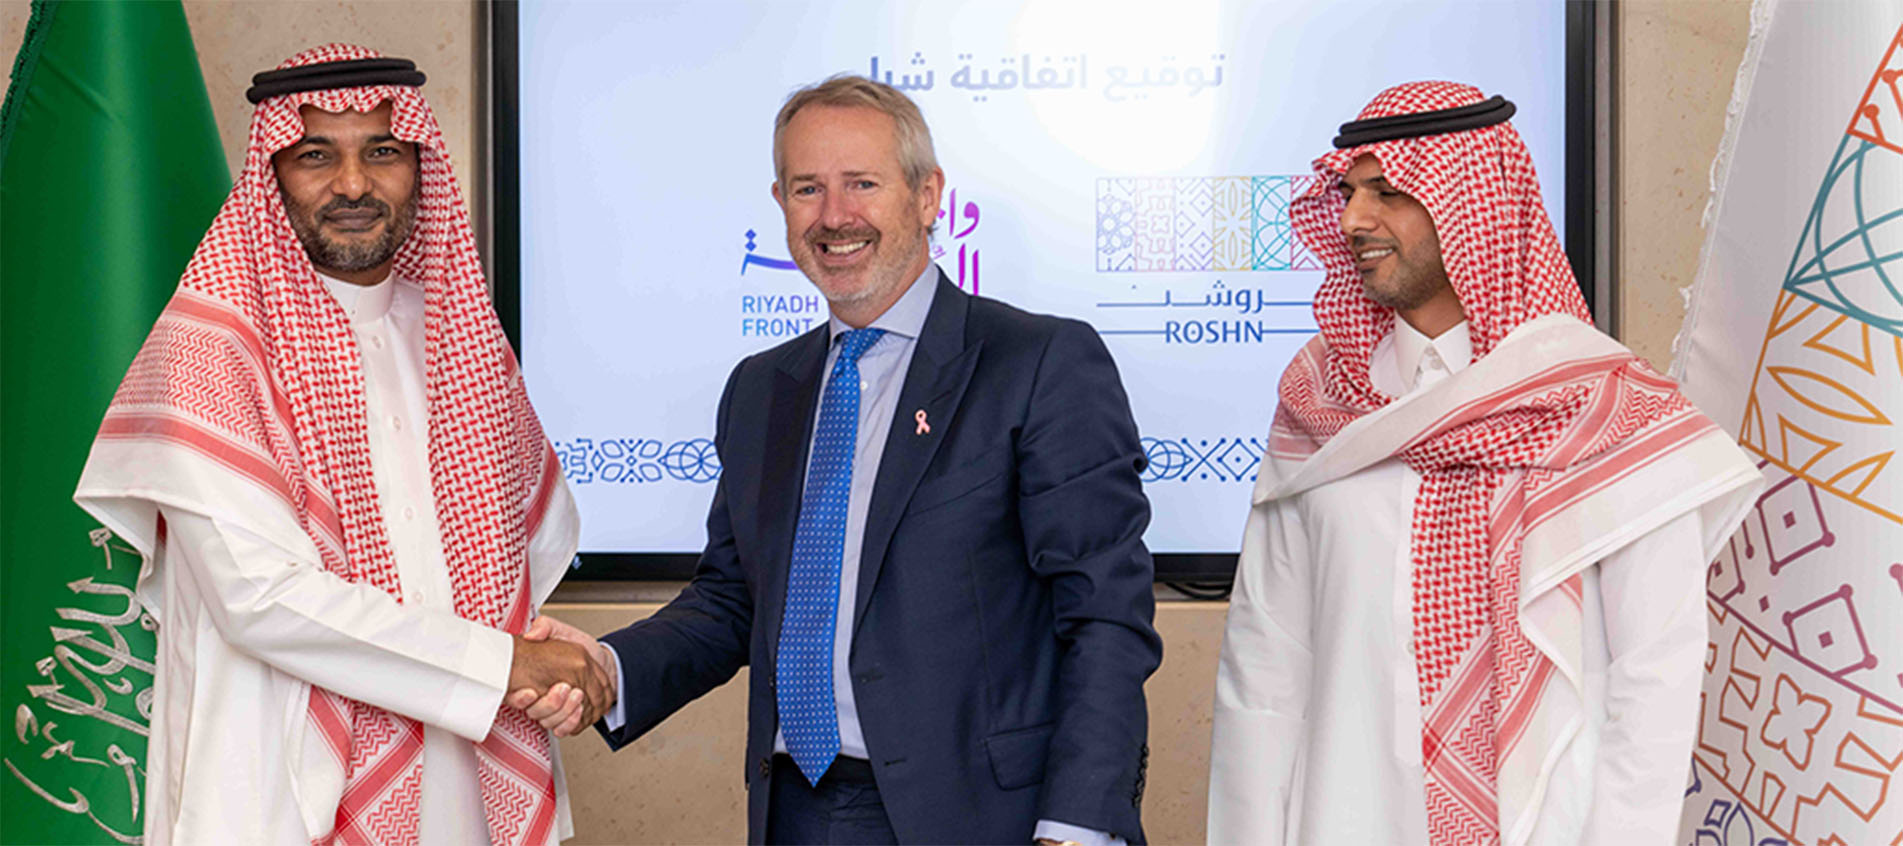 توقيع اتفاقية إدارة الممتلكات بين شركتي كادن وروشن لتستمر كادن بإدارة وتشغيل واجهة الرياض